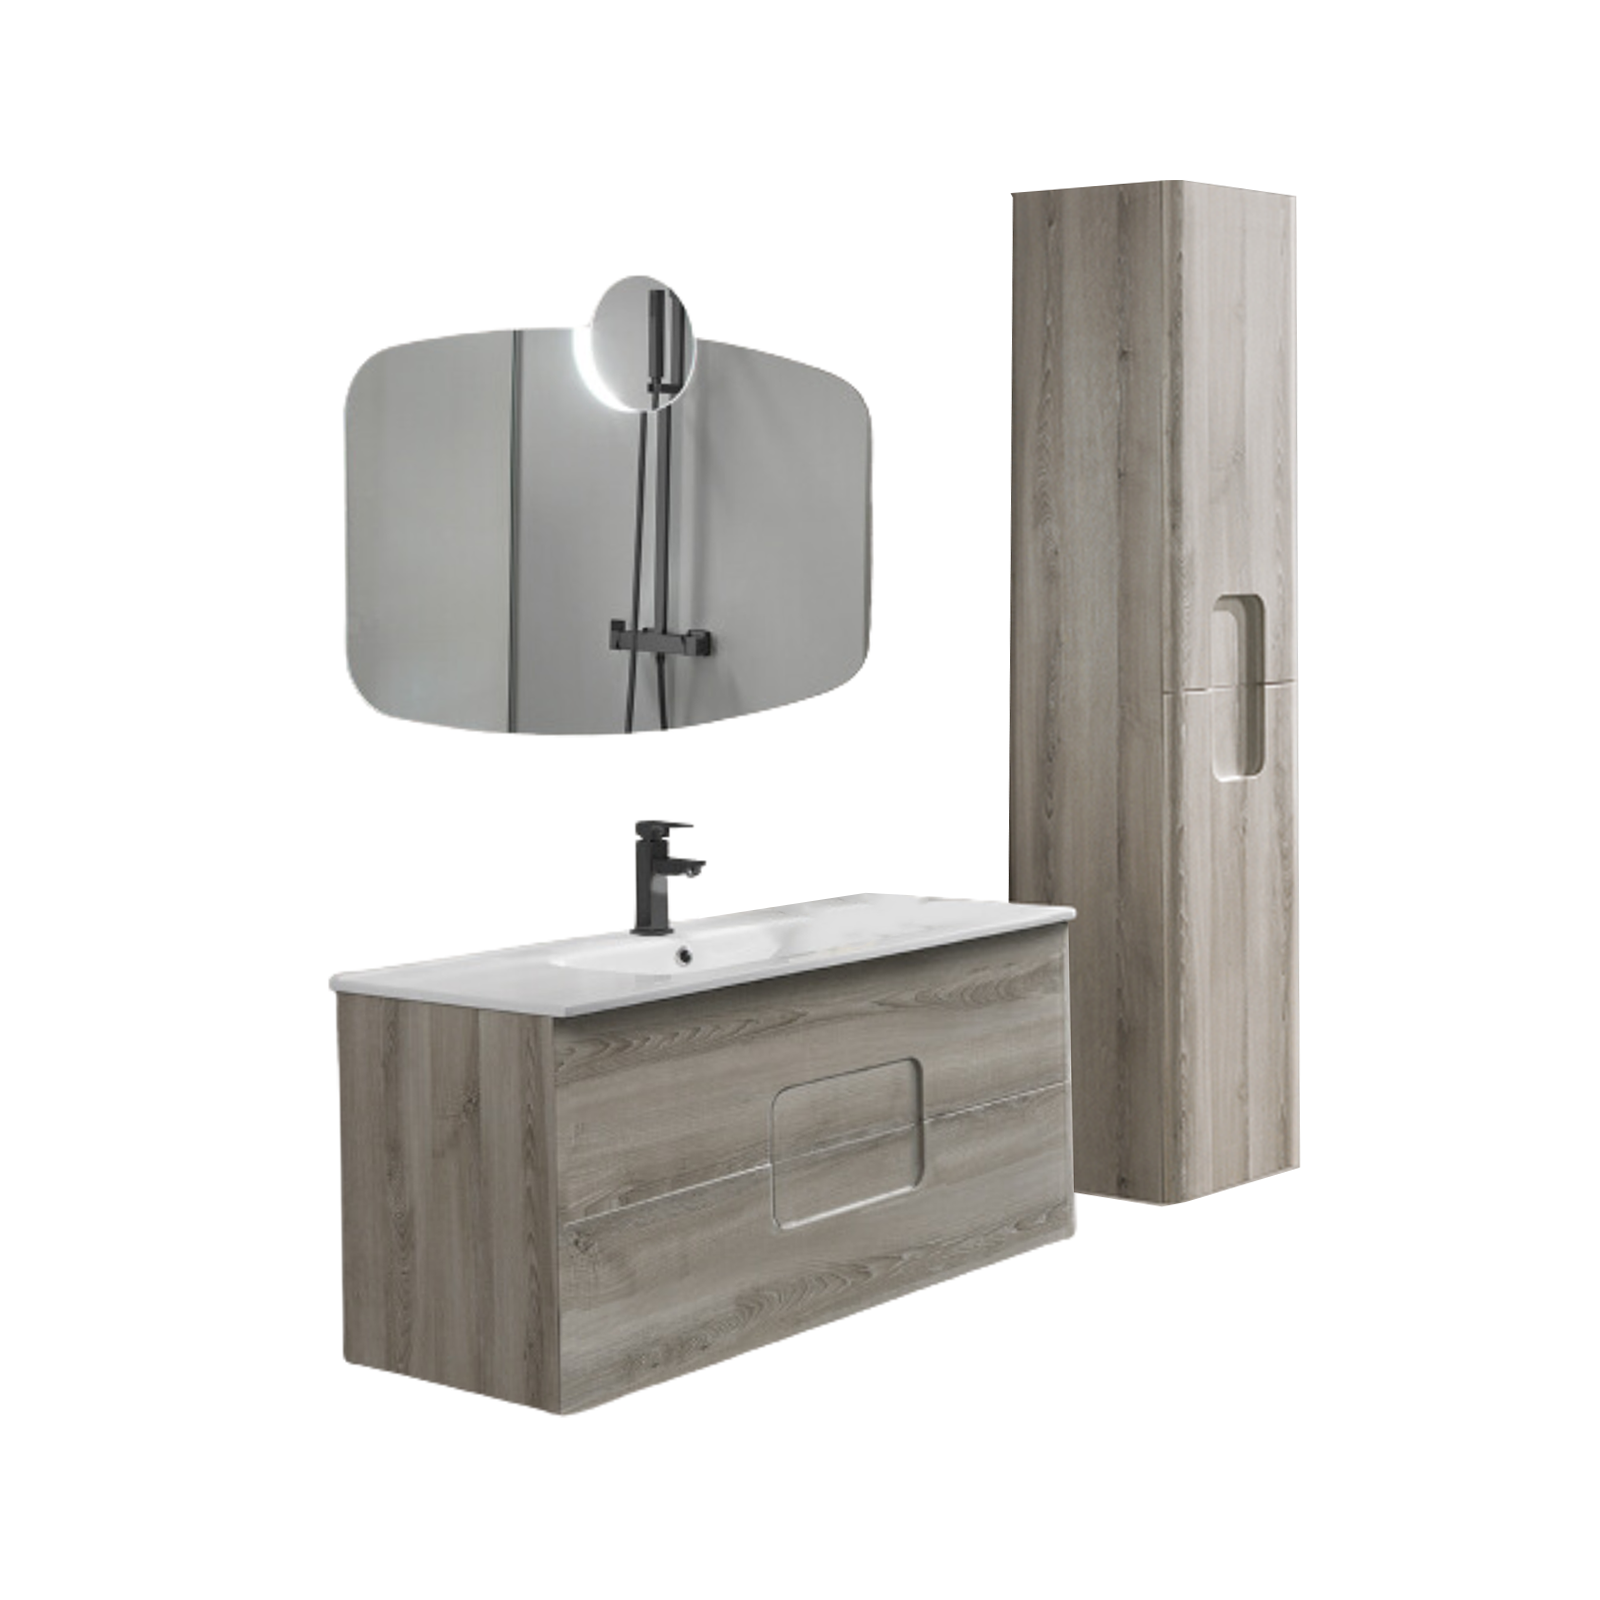 Mueble de baño suspendido "Arco120" 2 cajones, lavabo y espejo con columna